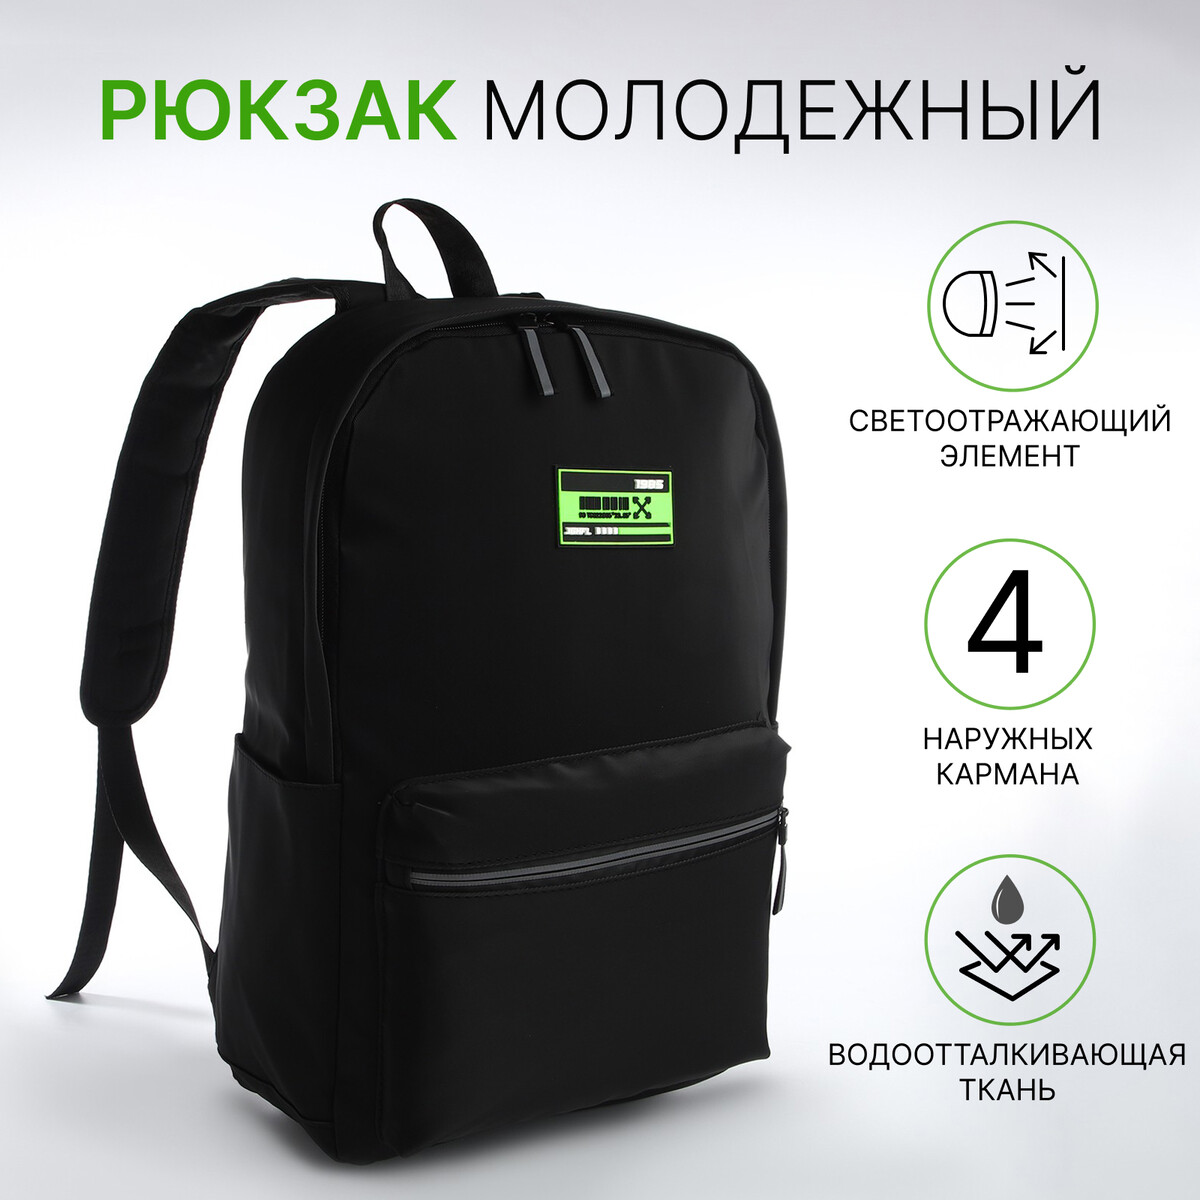 Рюкзак молодежный из текстиля на молнии, 2 кармана, цвет черный/зеленый